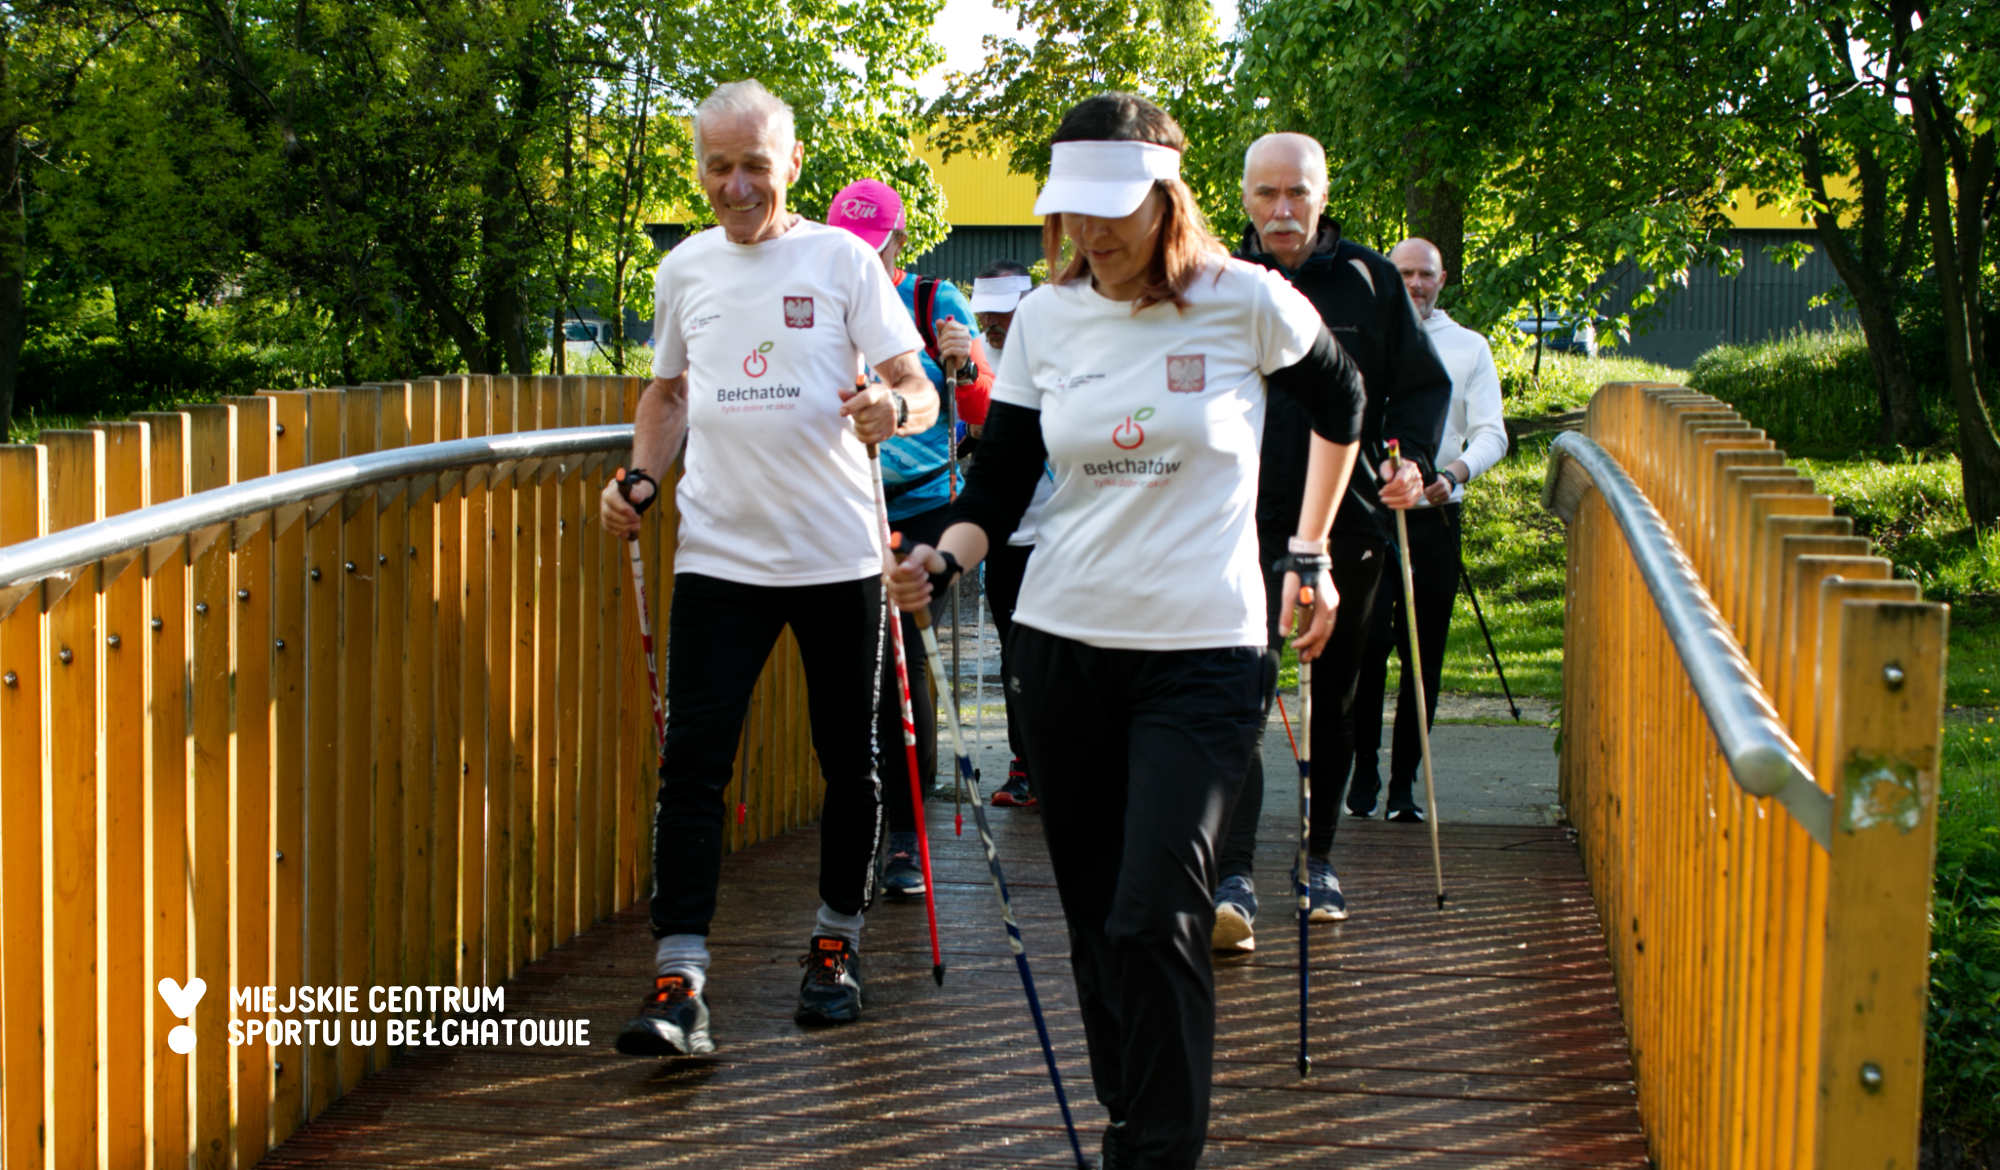 Na zdjęciu widoczni uczestnicy warsztatów Nordic Walking Bełchatów 2021 pod nazwą "Chodź po zdrowie!", którzy uczestniczyli w marszu rekreacyjnym idący przez kładkę nad rzeką w Parku Olszewskich